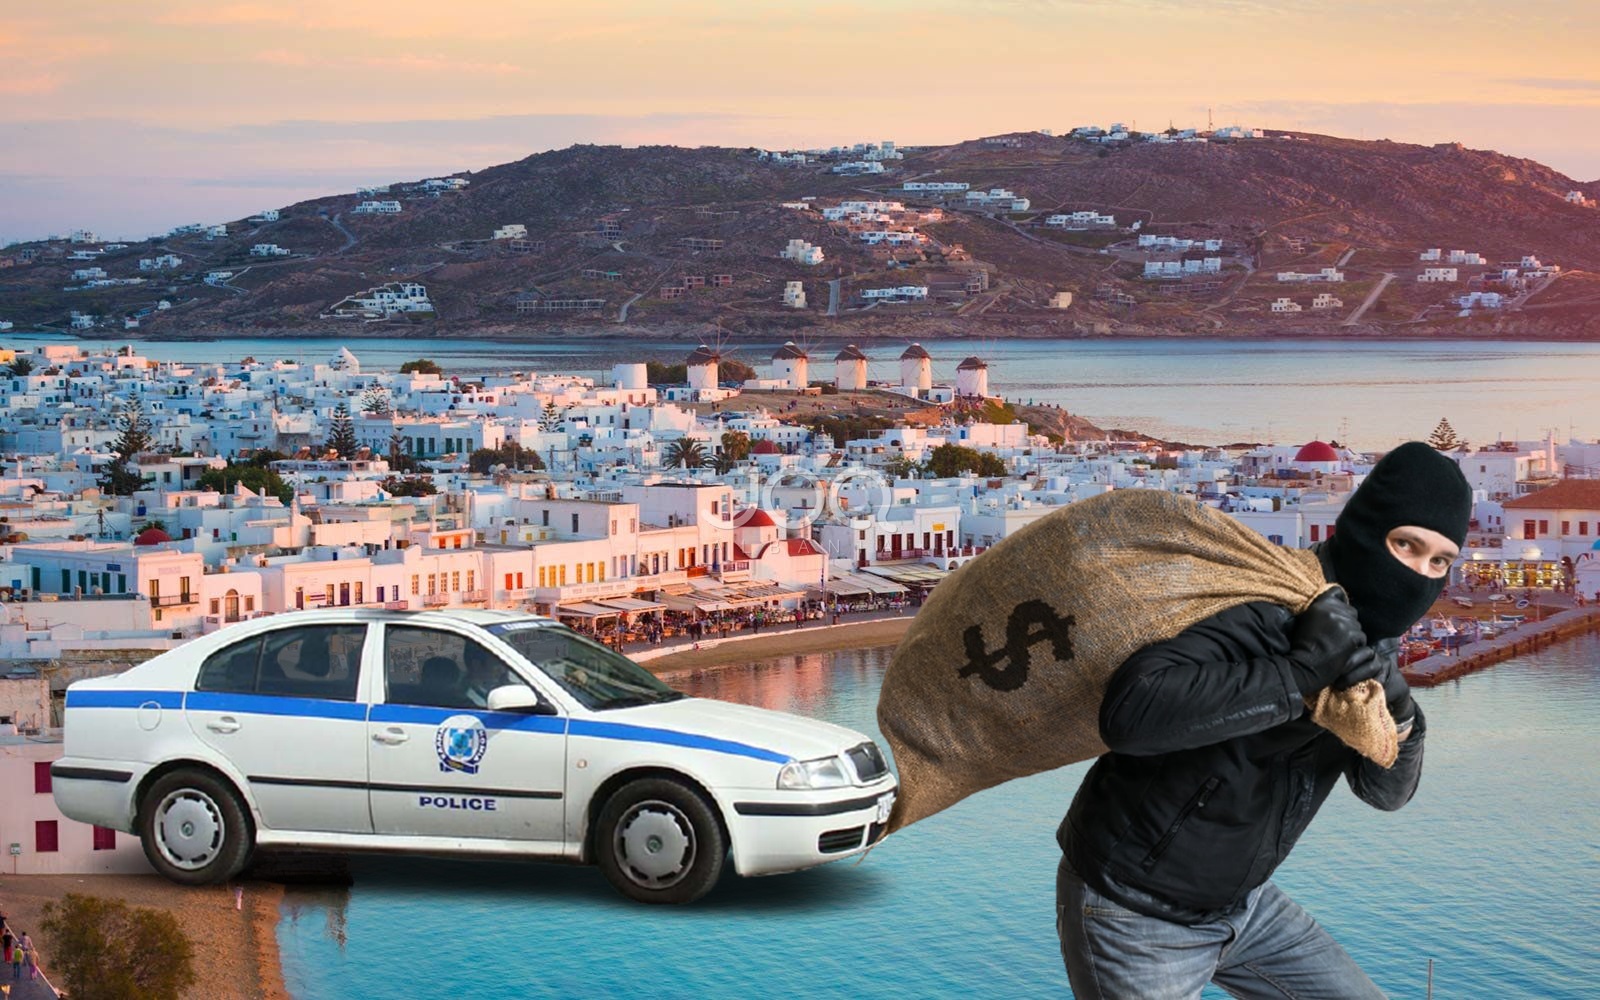 Tentuan të grabisnin vilat luksoze në ishullin e të pasurve/ Policia greke i prish planin dy shqiptarëve, plagoset një efektiv